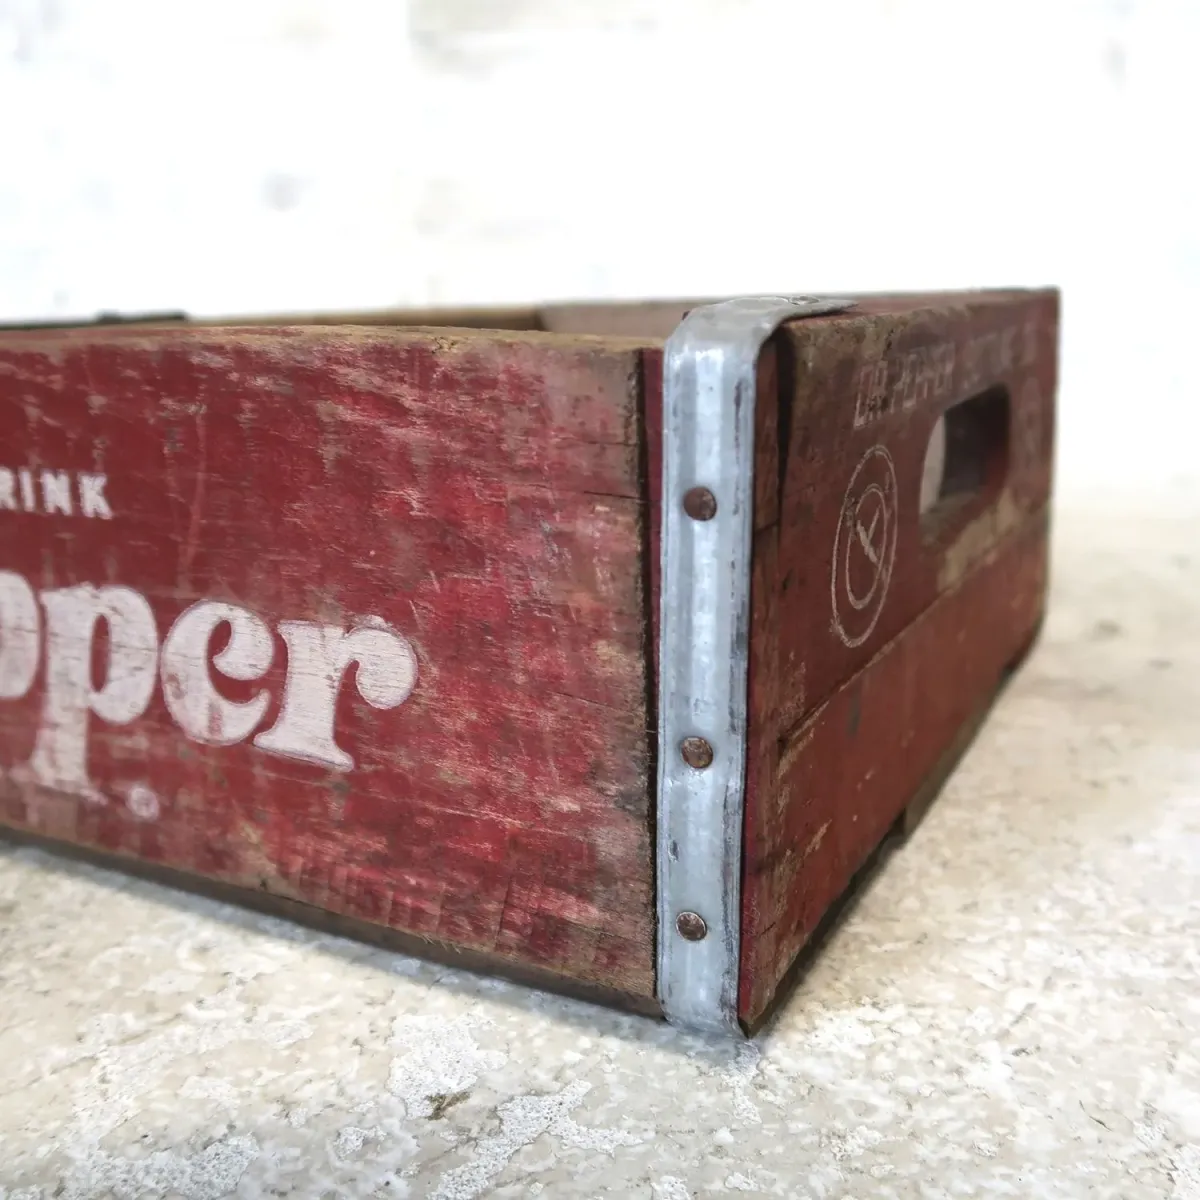 Dr Pepper ビンテージ ウッドボックス